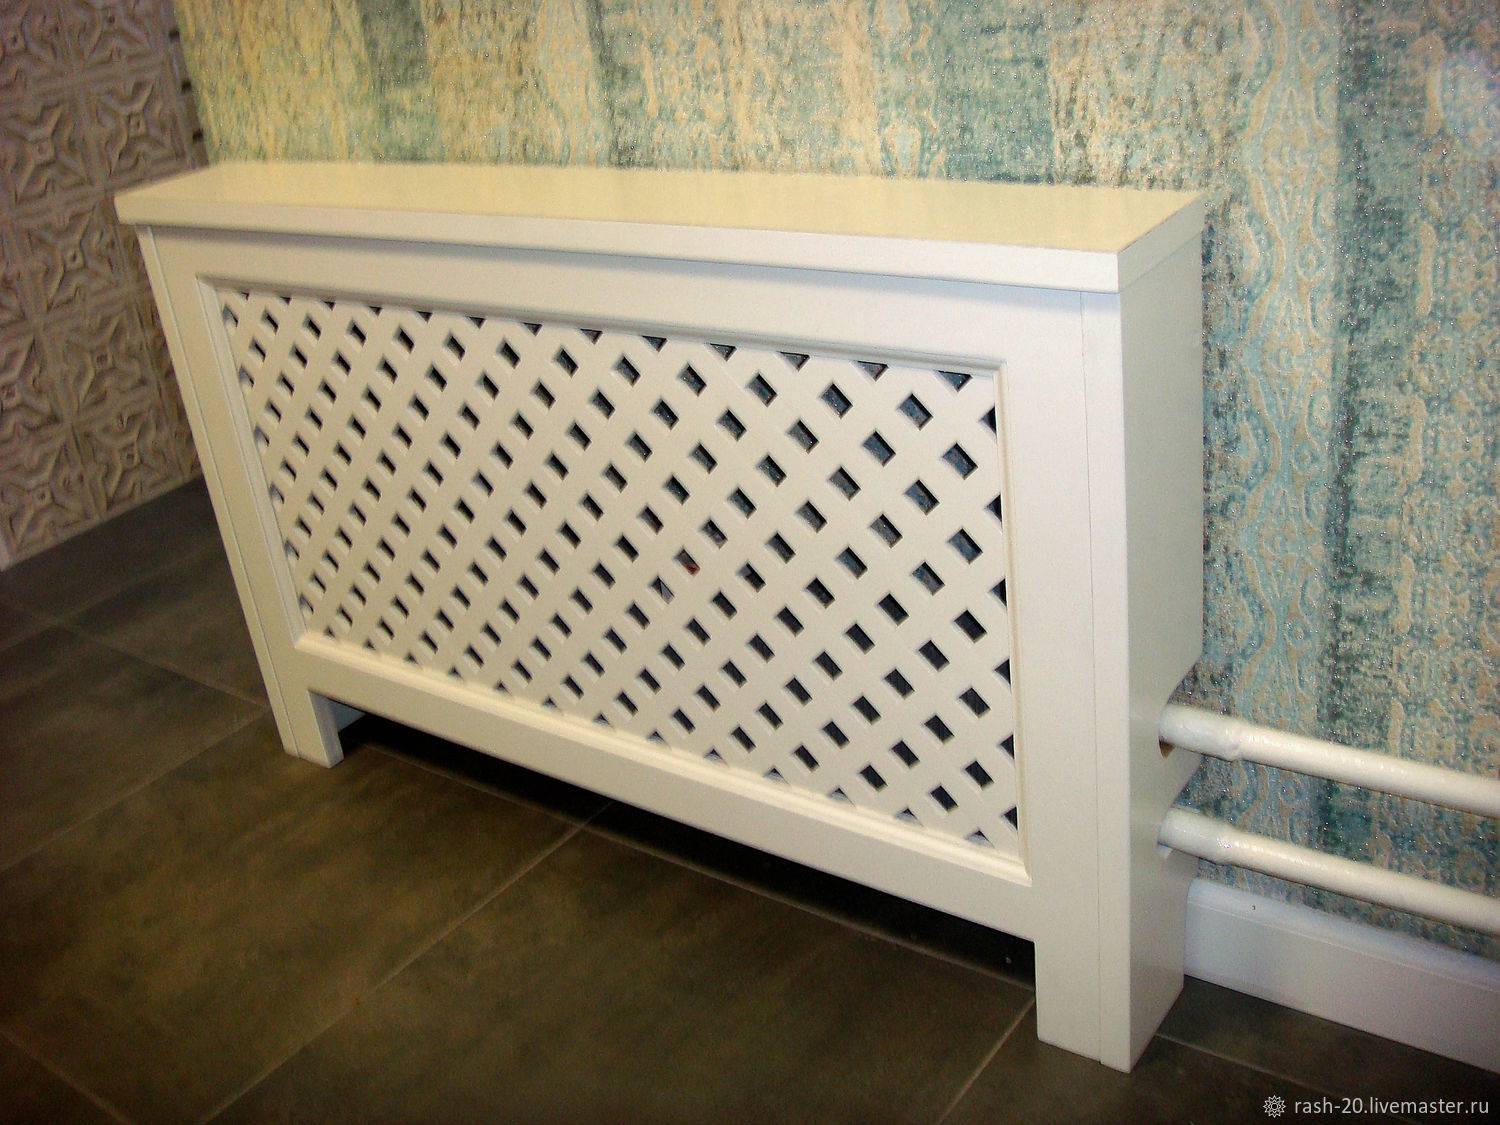 Декоративная решетка для радиатора отопления своими руками - всё об отоплении